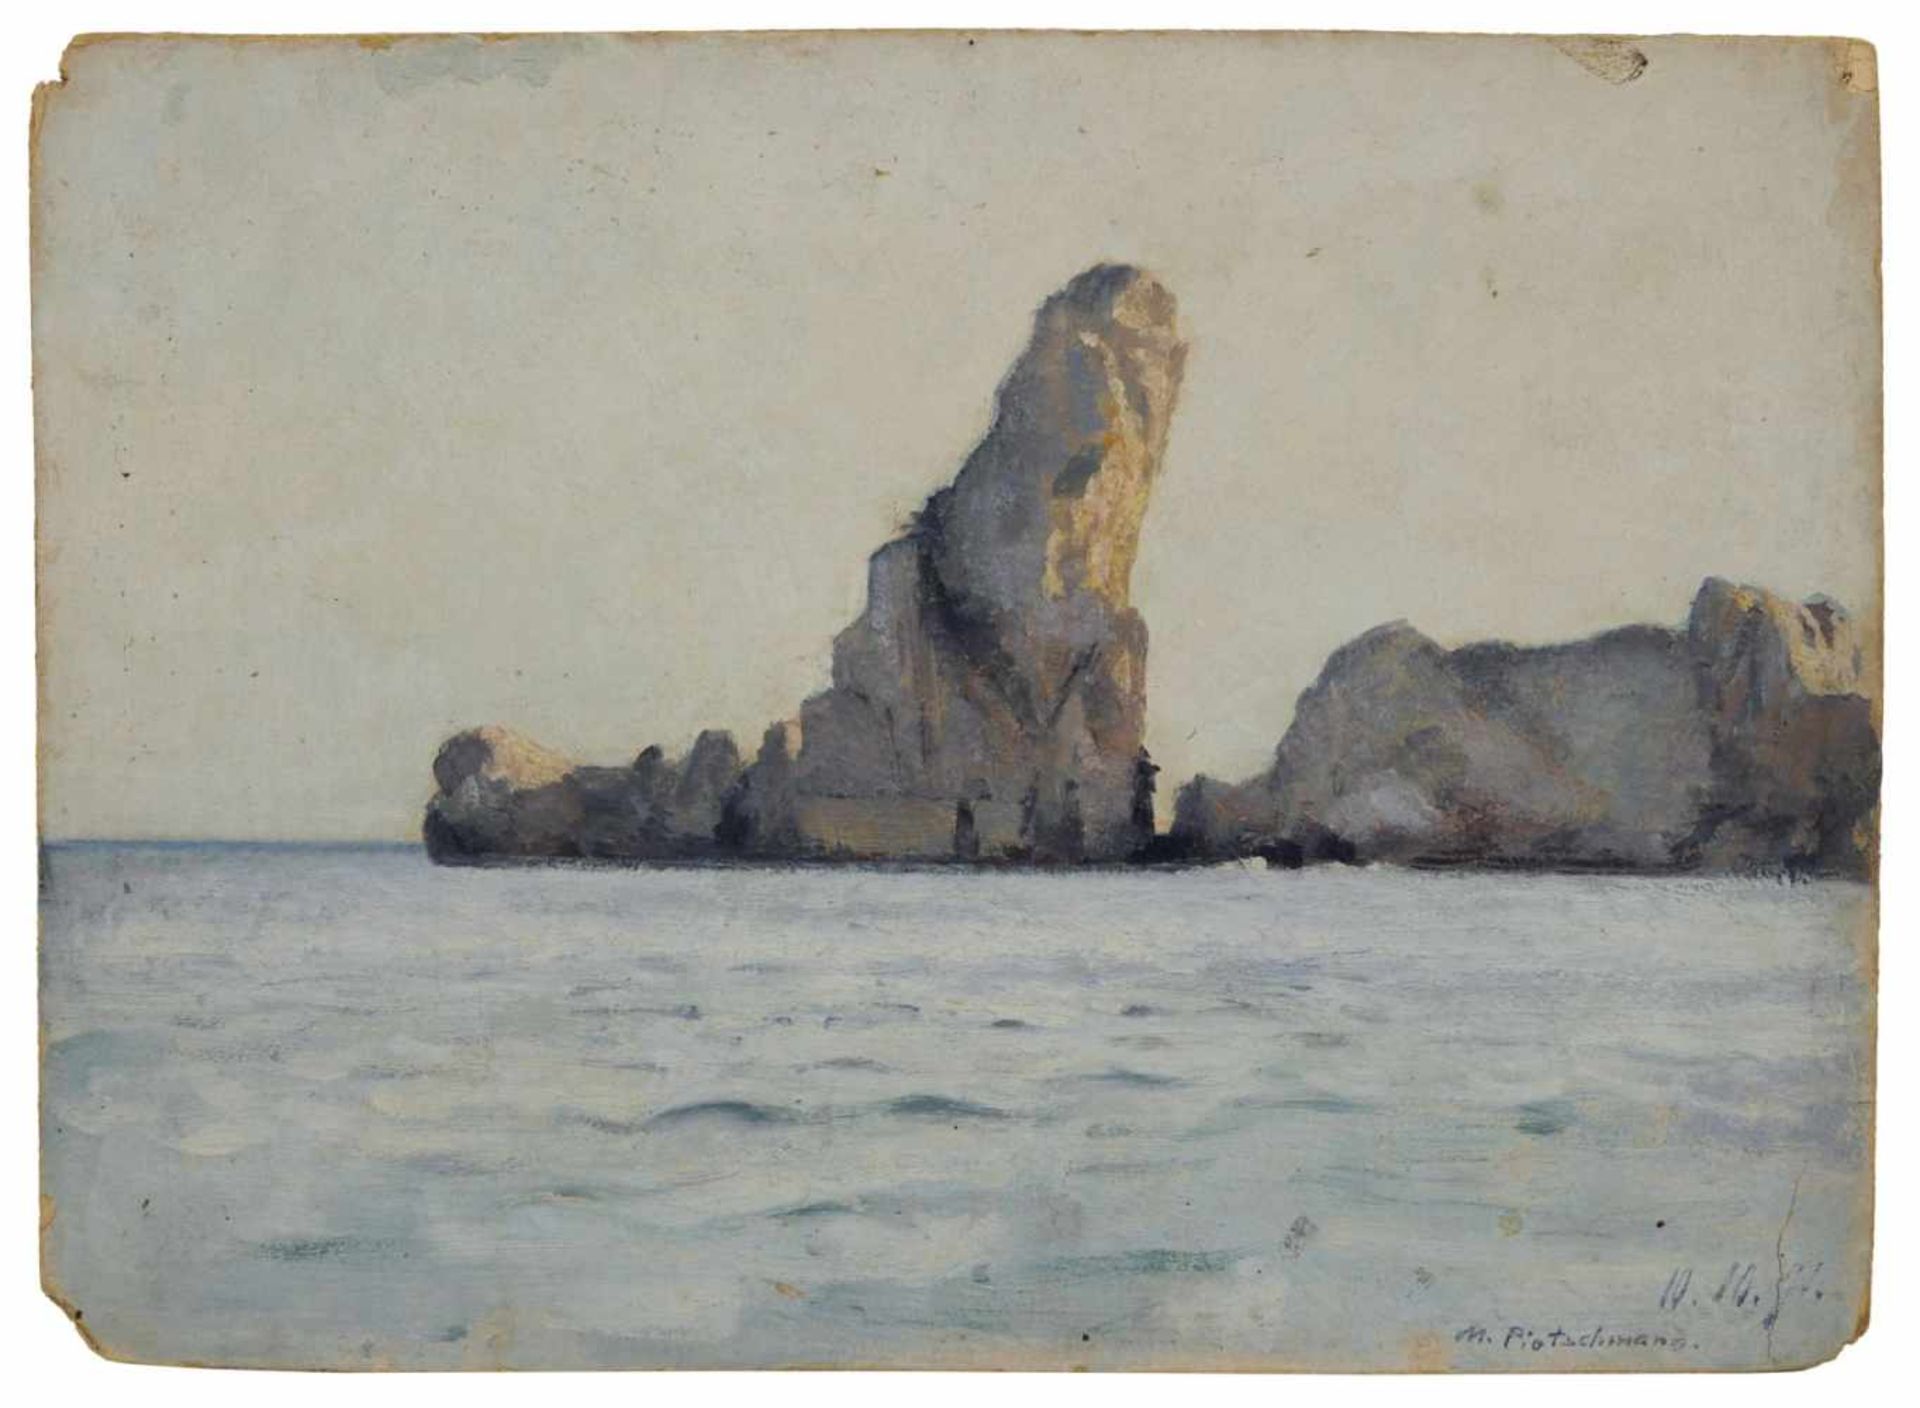 Max Pietschmann, Blick auf die Aiguilles Rocheuses auf der Belle-Île, Bretagne. 1891.Max Pietschmann